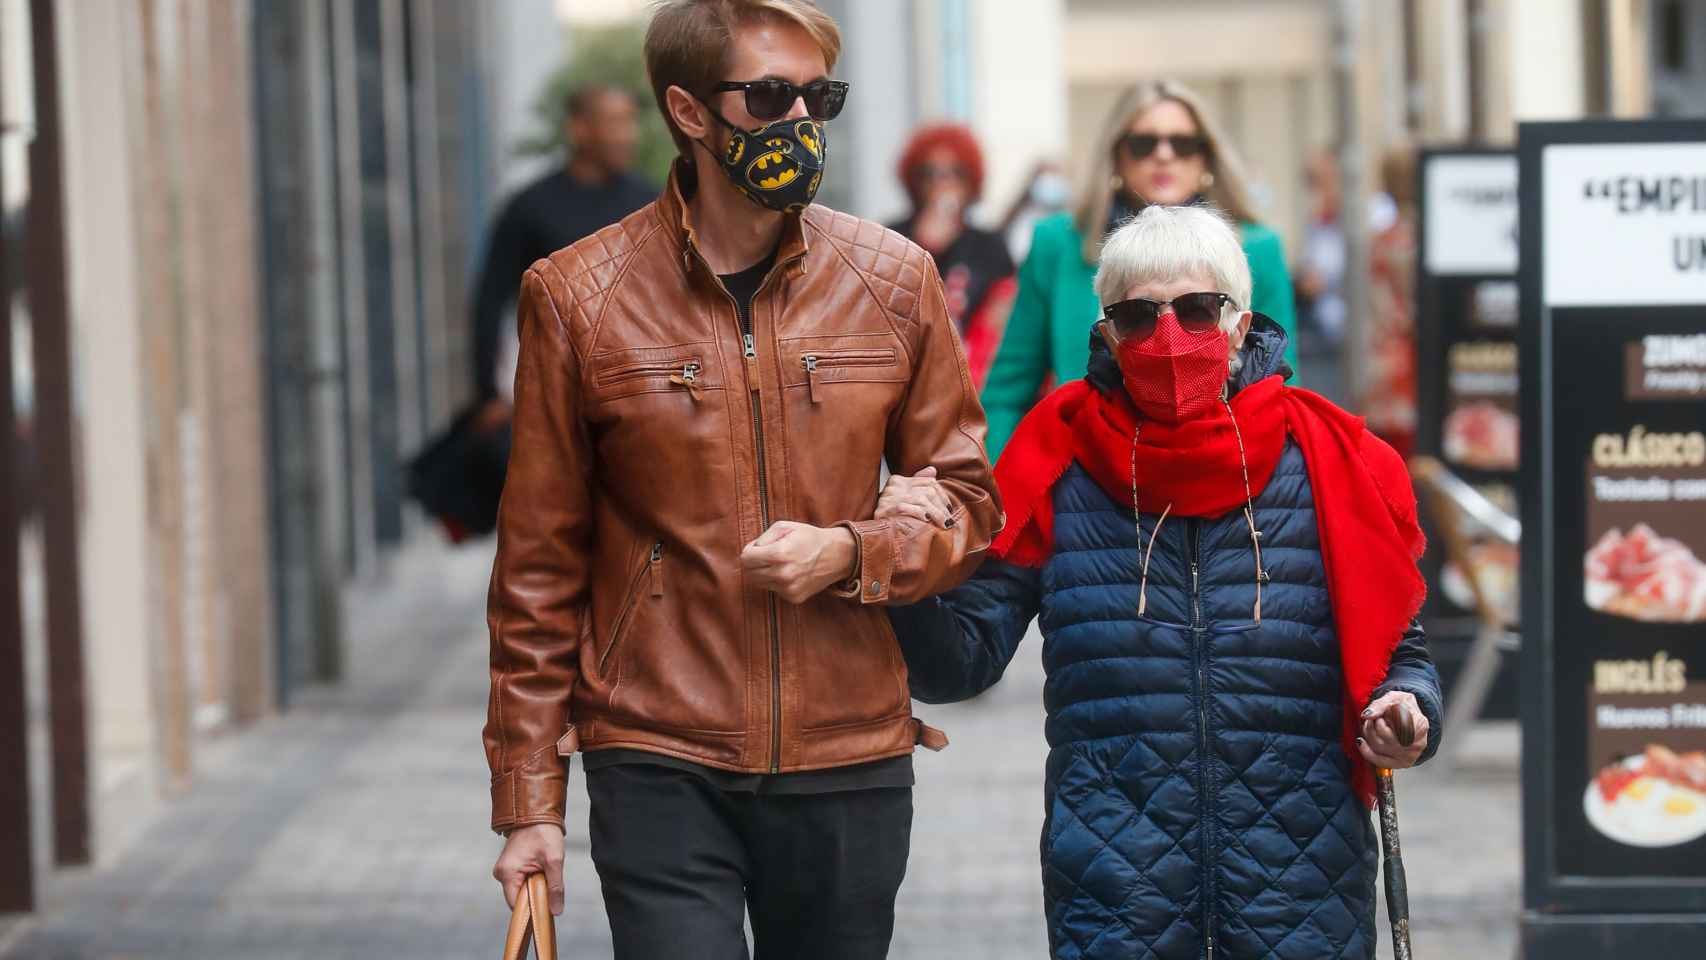 Concha junto a su hijo Manuel paseando por las calles de Madrid, en septiembre de 2021.